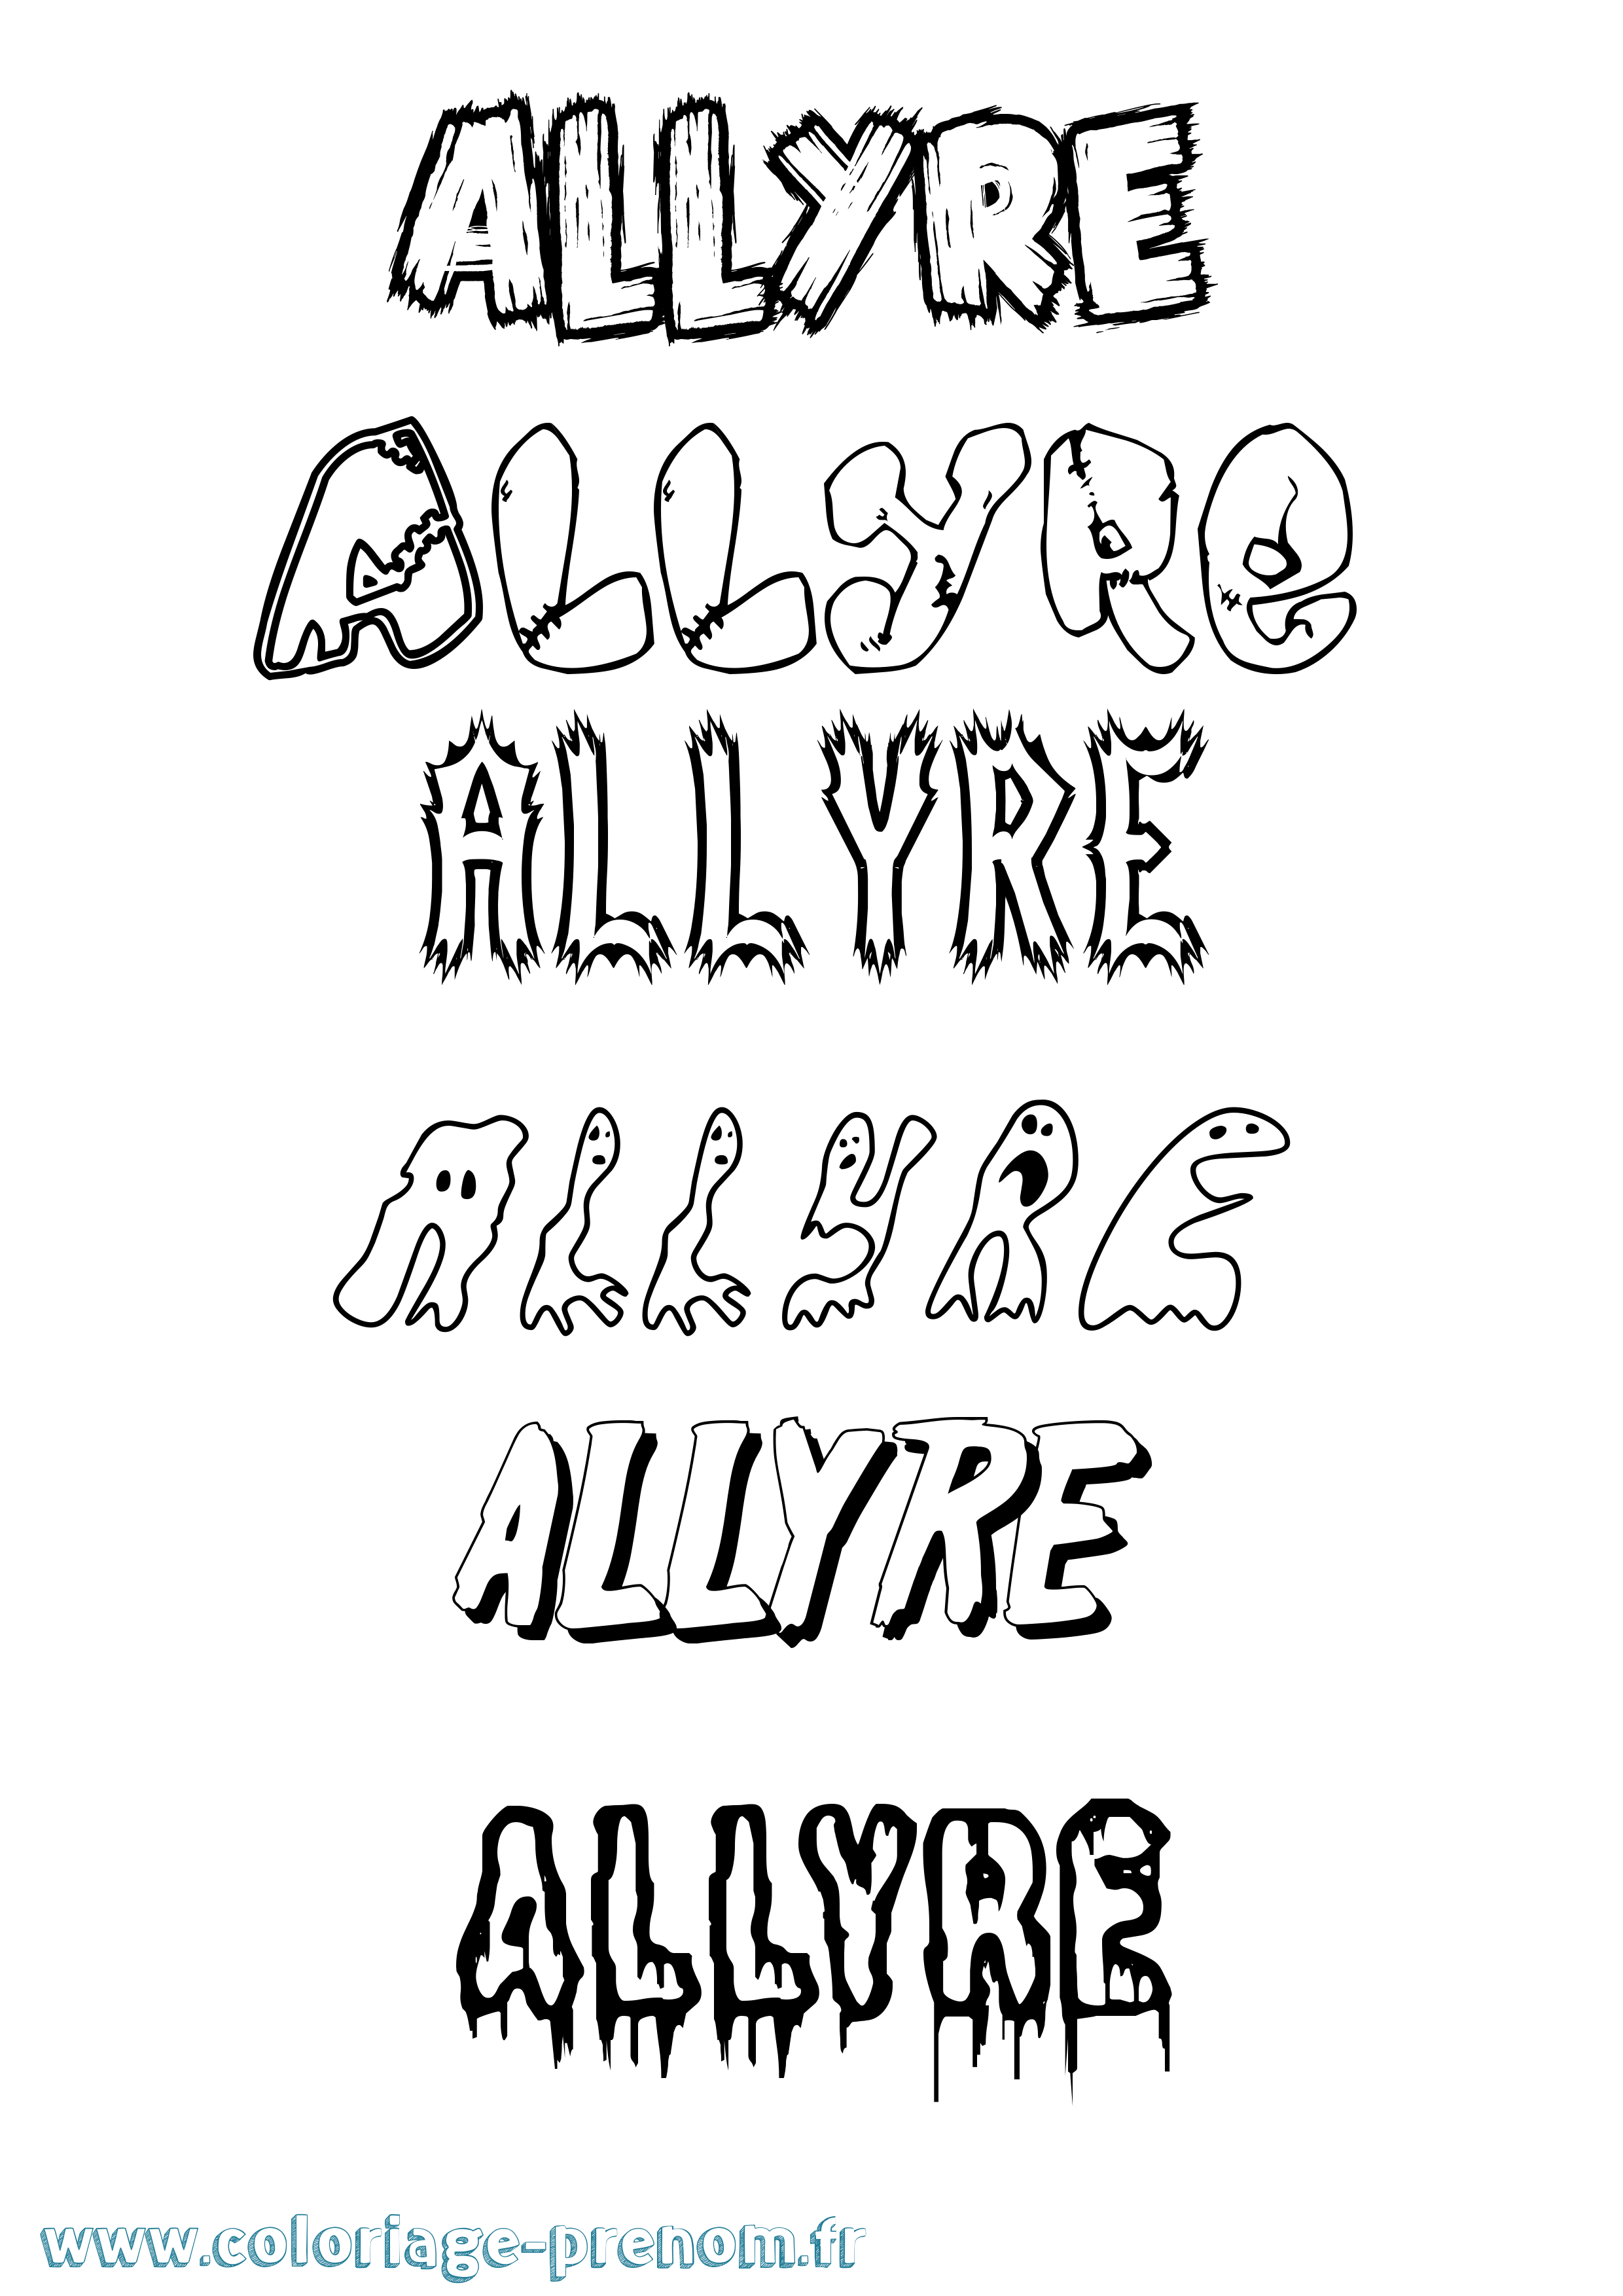 Coloriage prénom Allyre Frisson